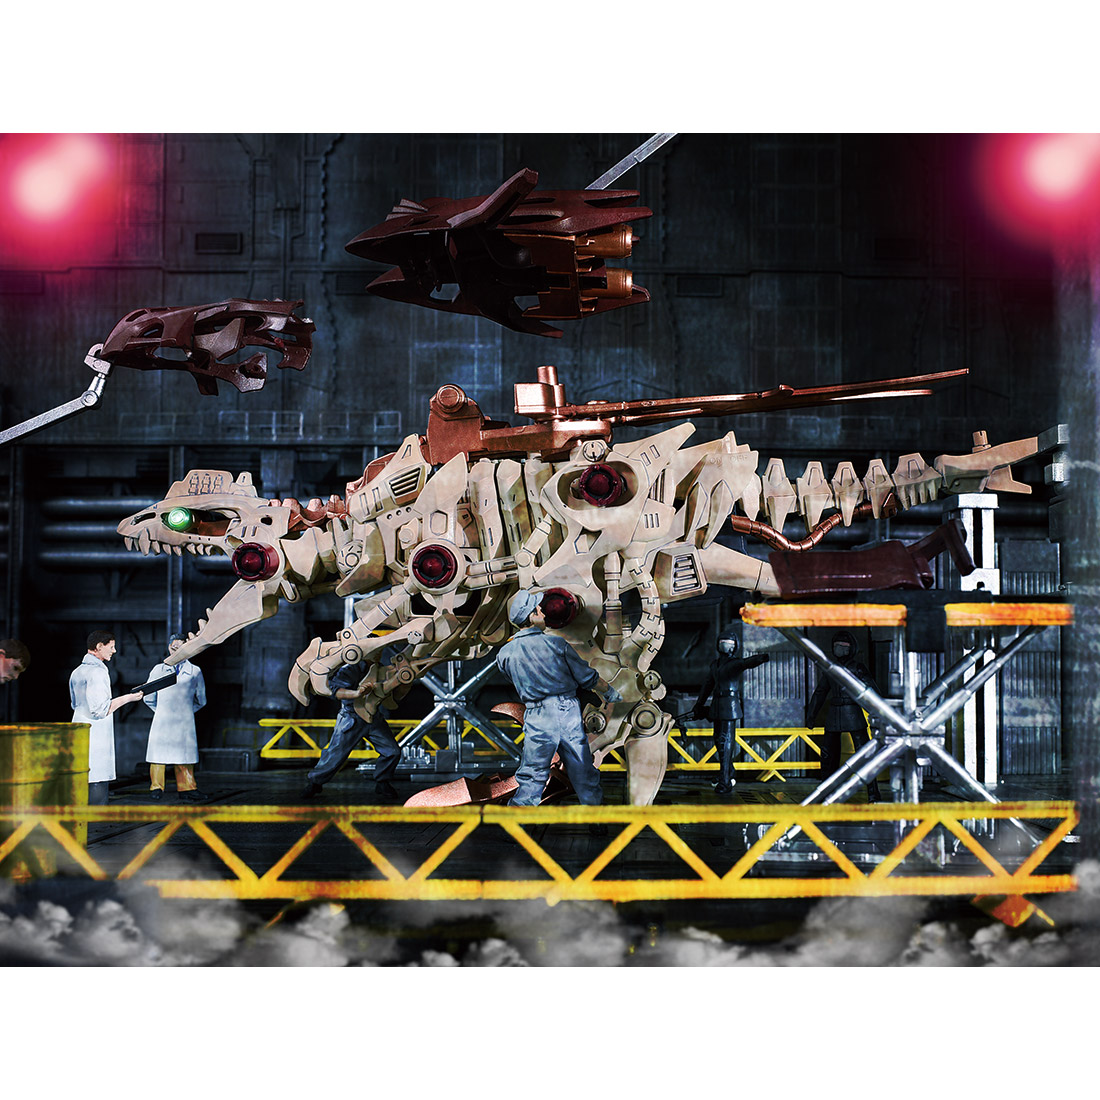 【恐竜博2019開催記念】ゾイドワイルド『ギルラプター レアボーンver.』組み立てキット-007